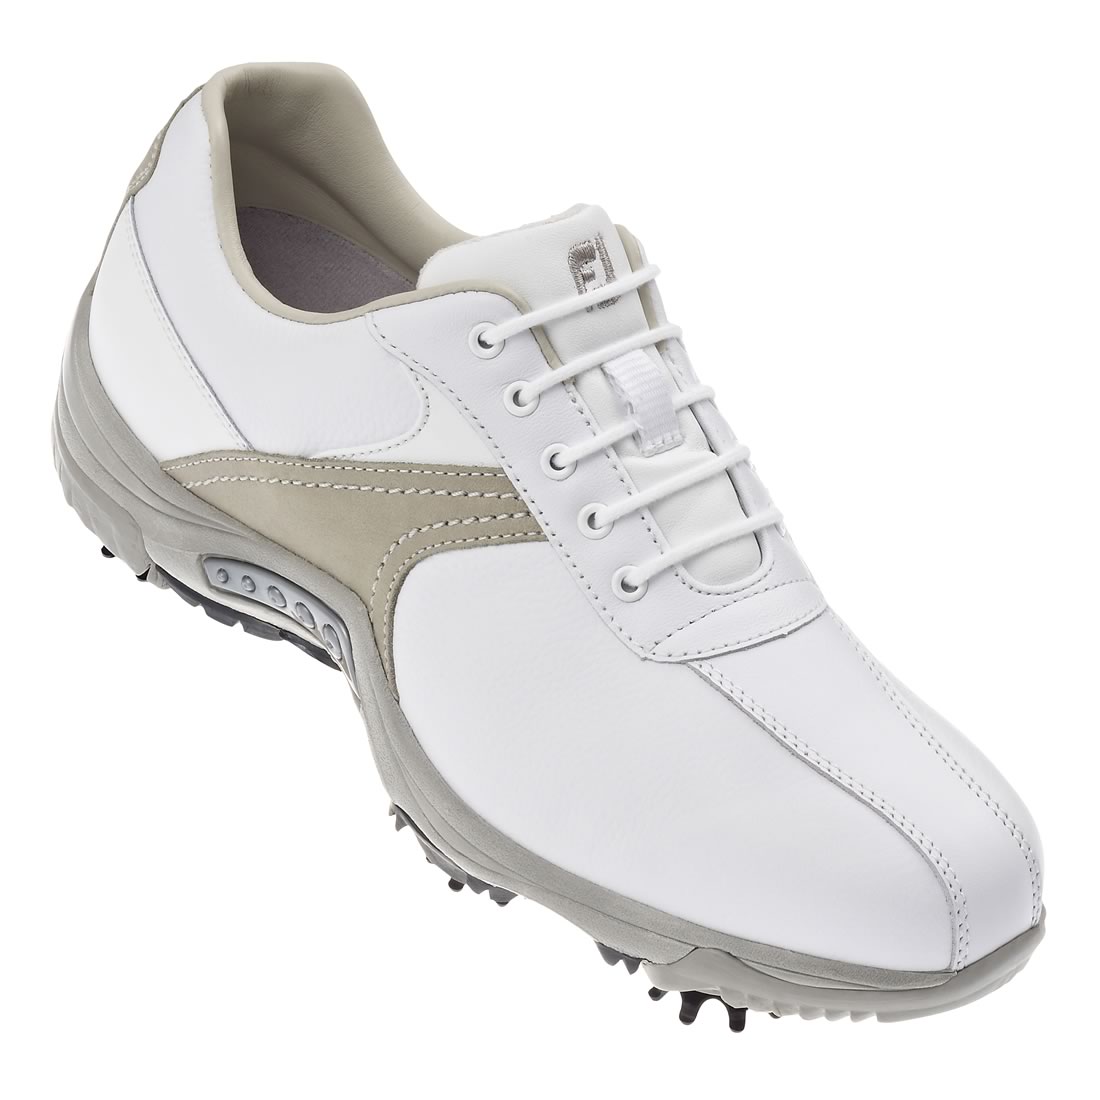 FootJoy Ladies Contour Golf Shoes White/Drift